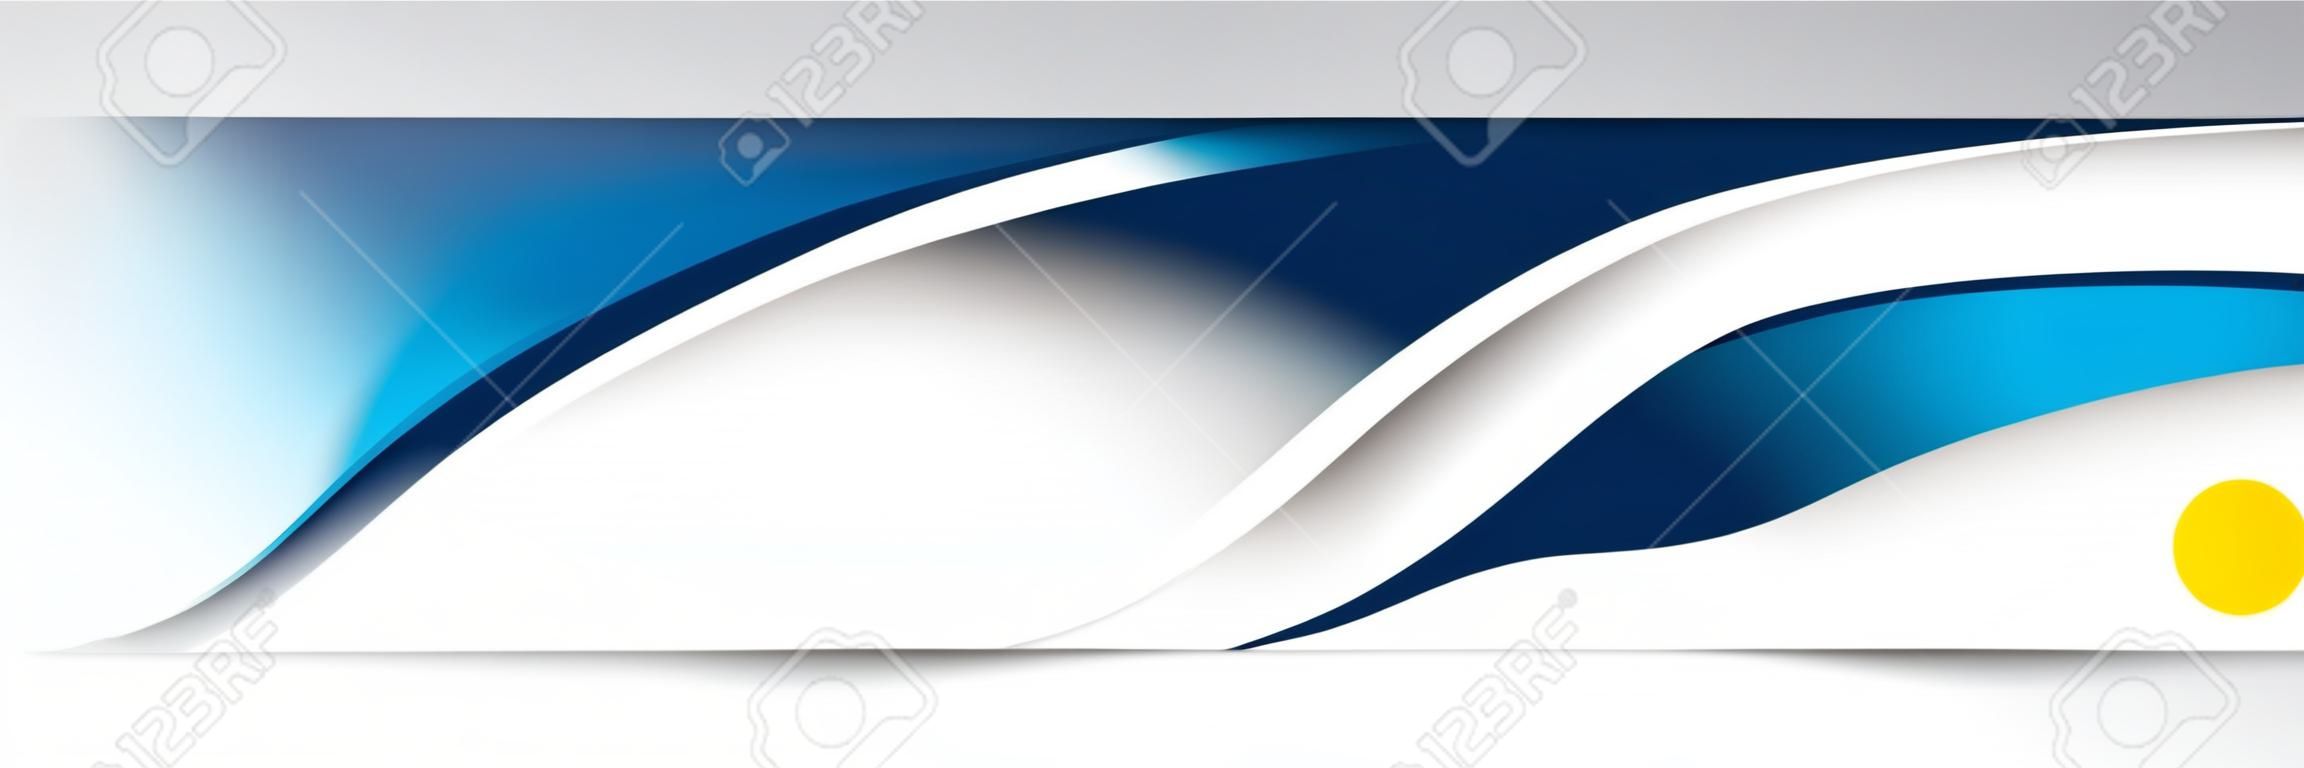 Abstrait courbe bleue en-tête Design Image vectorielle de fond